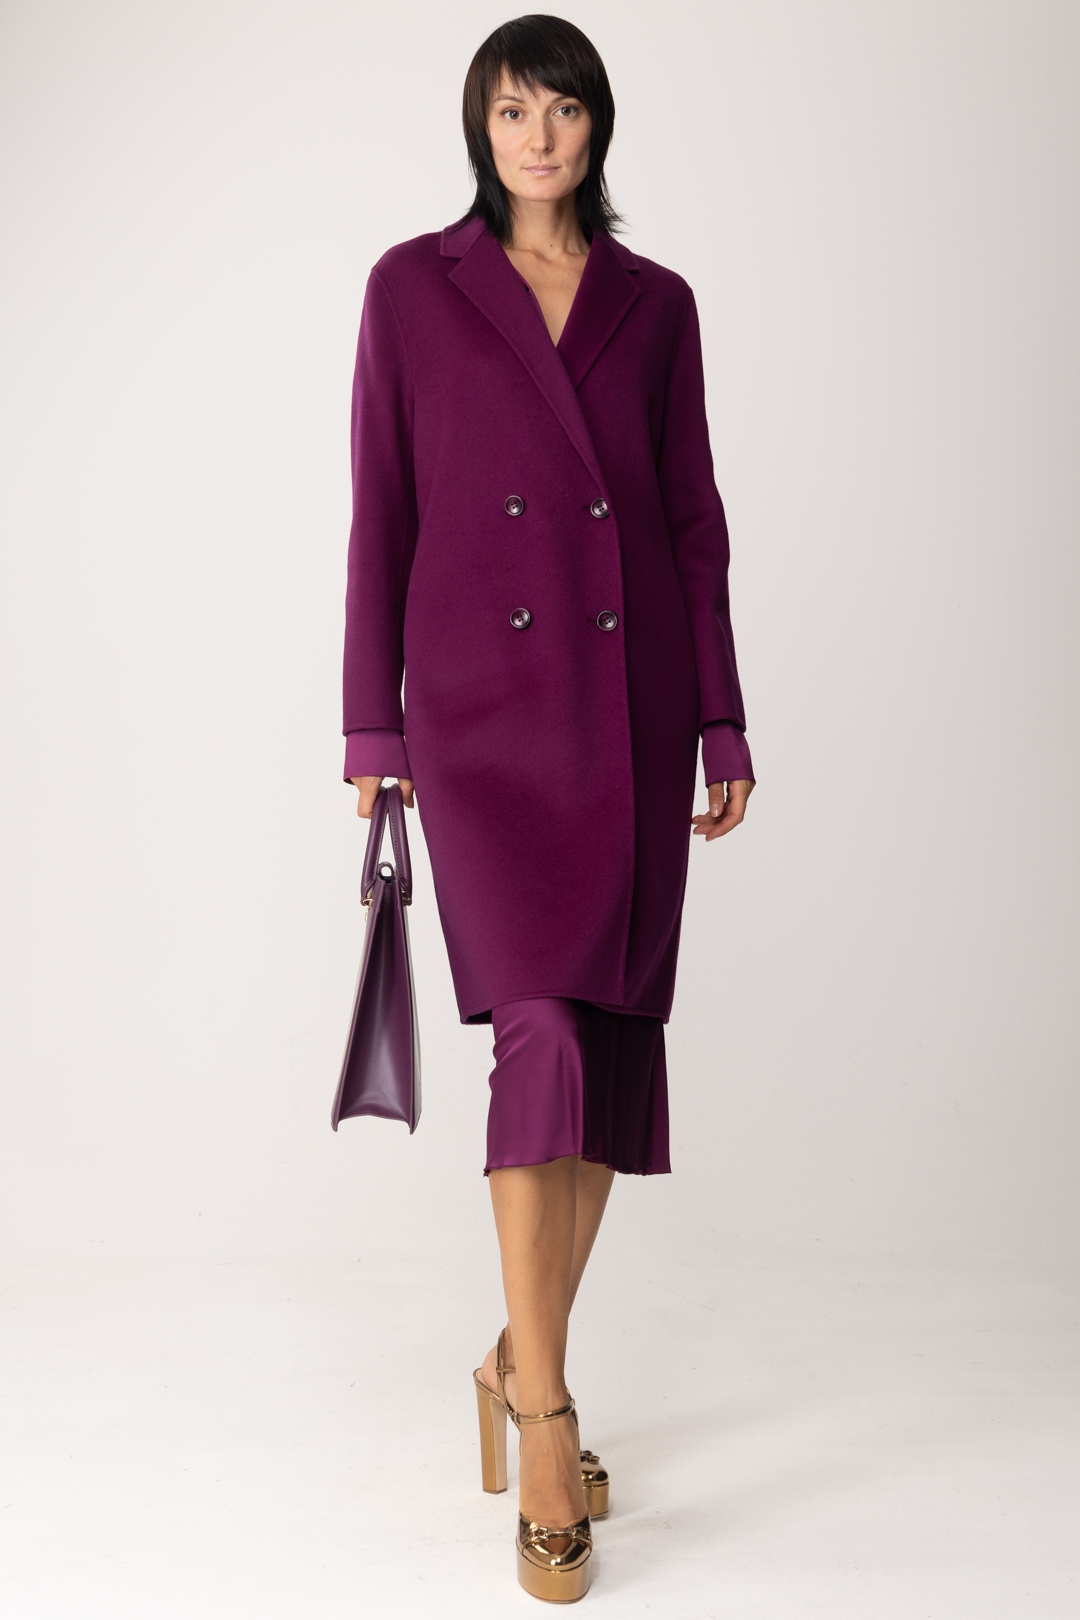 Podgląd: Patrizia Pepe Dwurzędowy płaszcz materiałowy Futuristic Purple